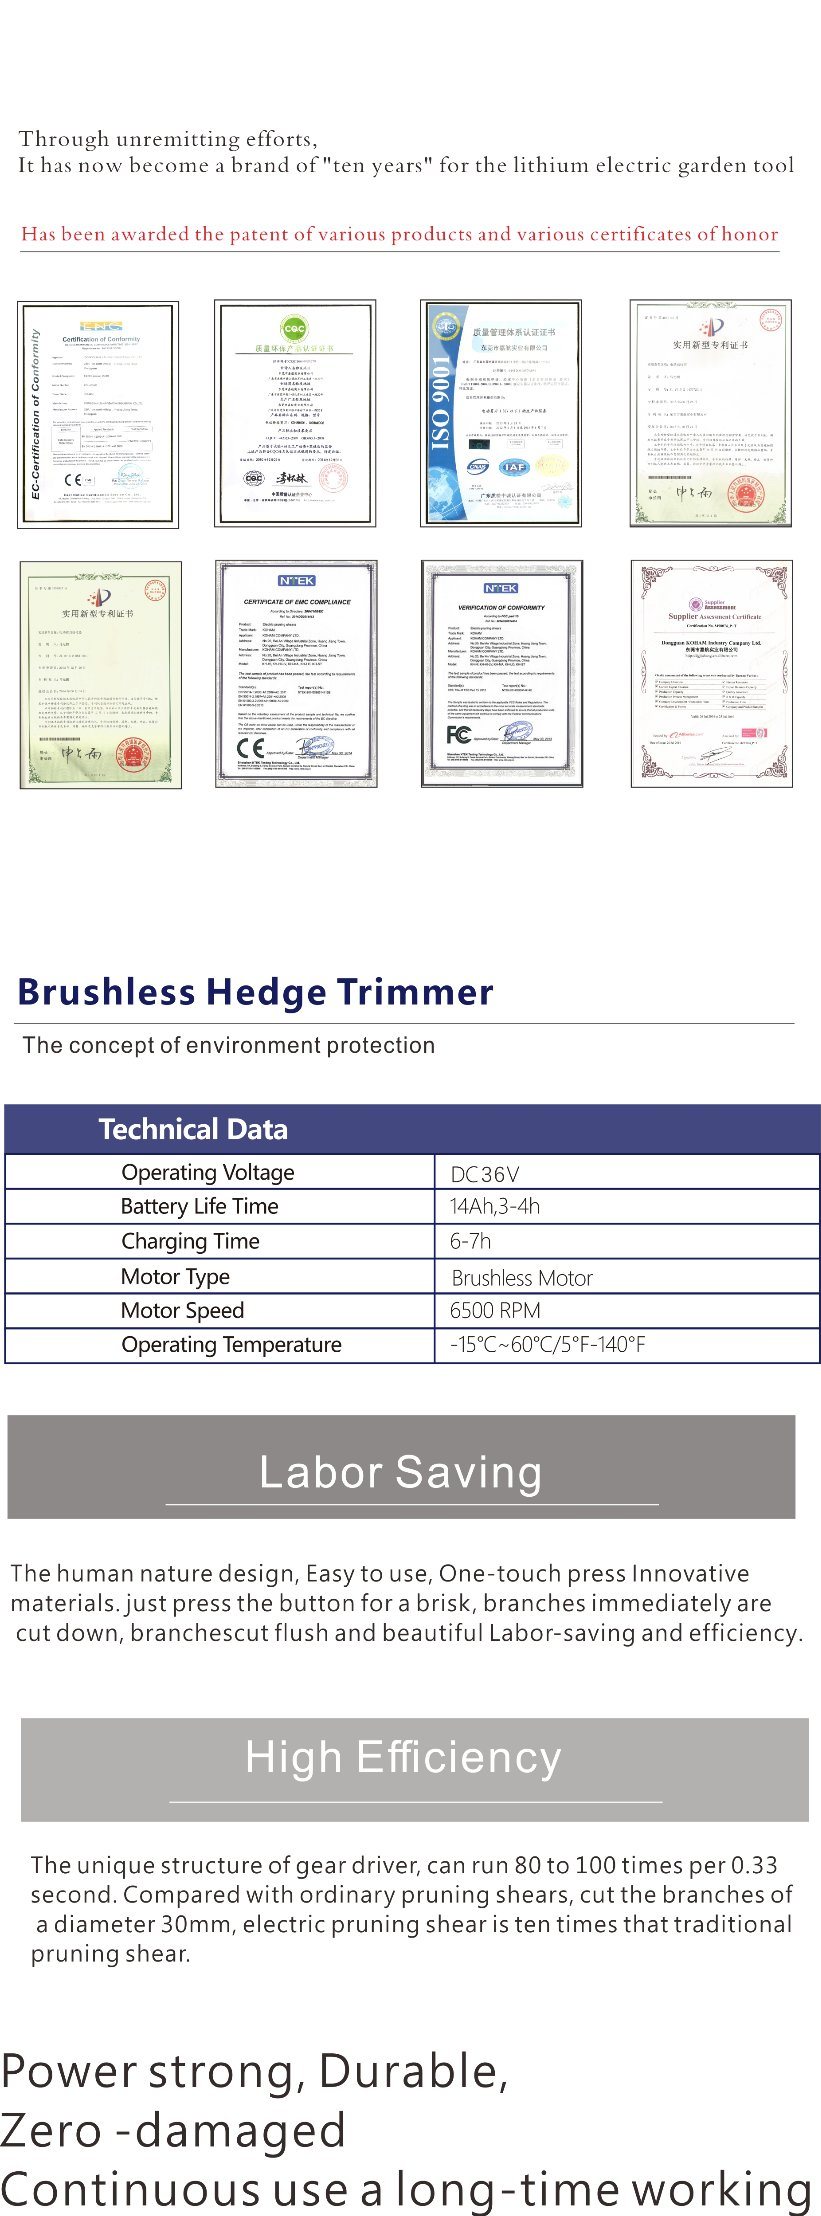 Koham Brushless Hedge Trimmer Kh-14